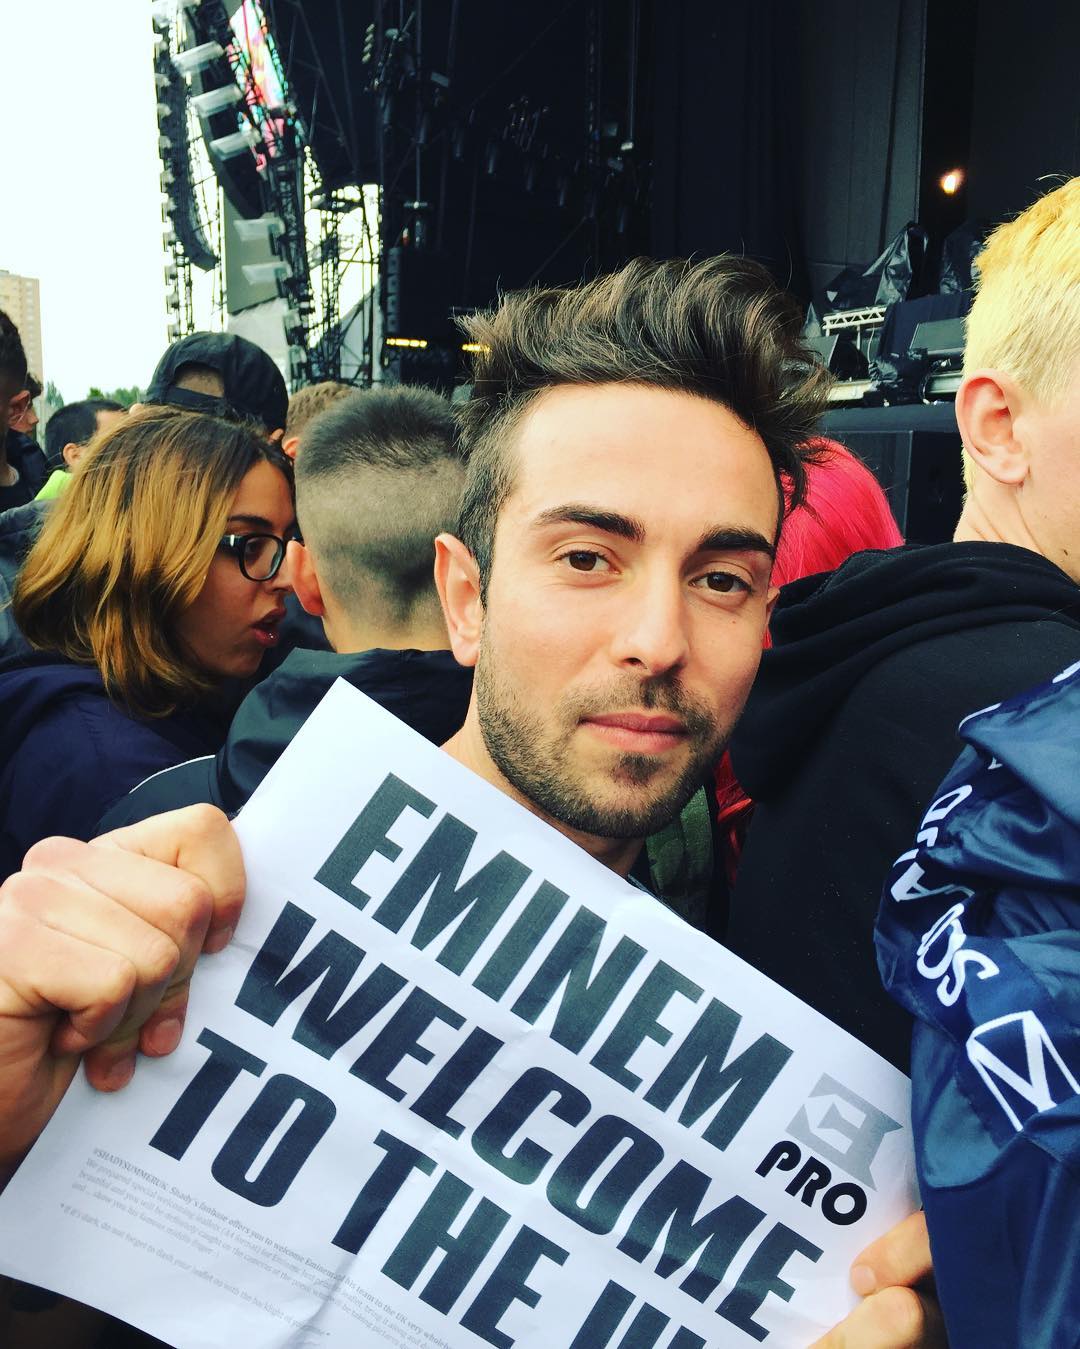 Листовки Eminem.Pro, концерт Эминема